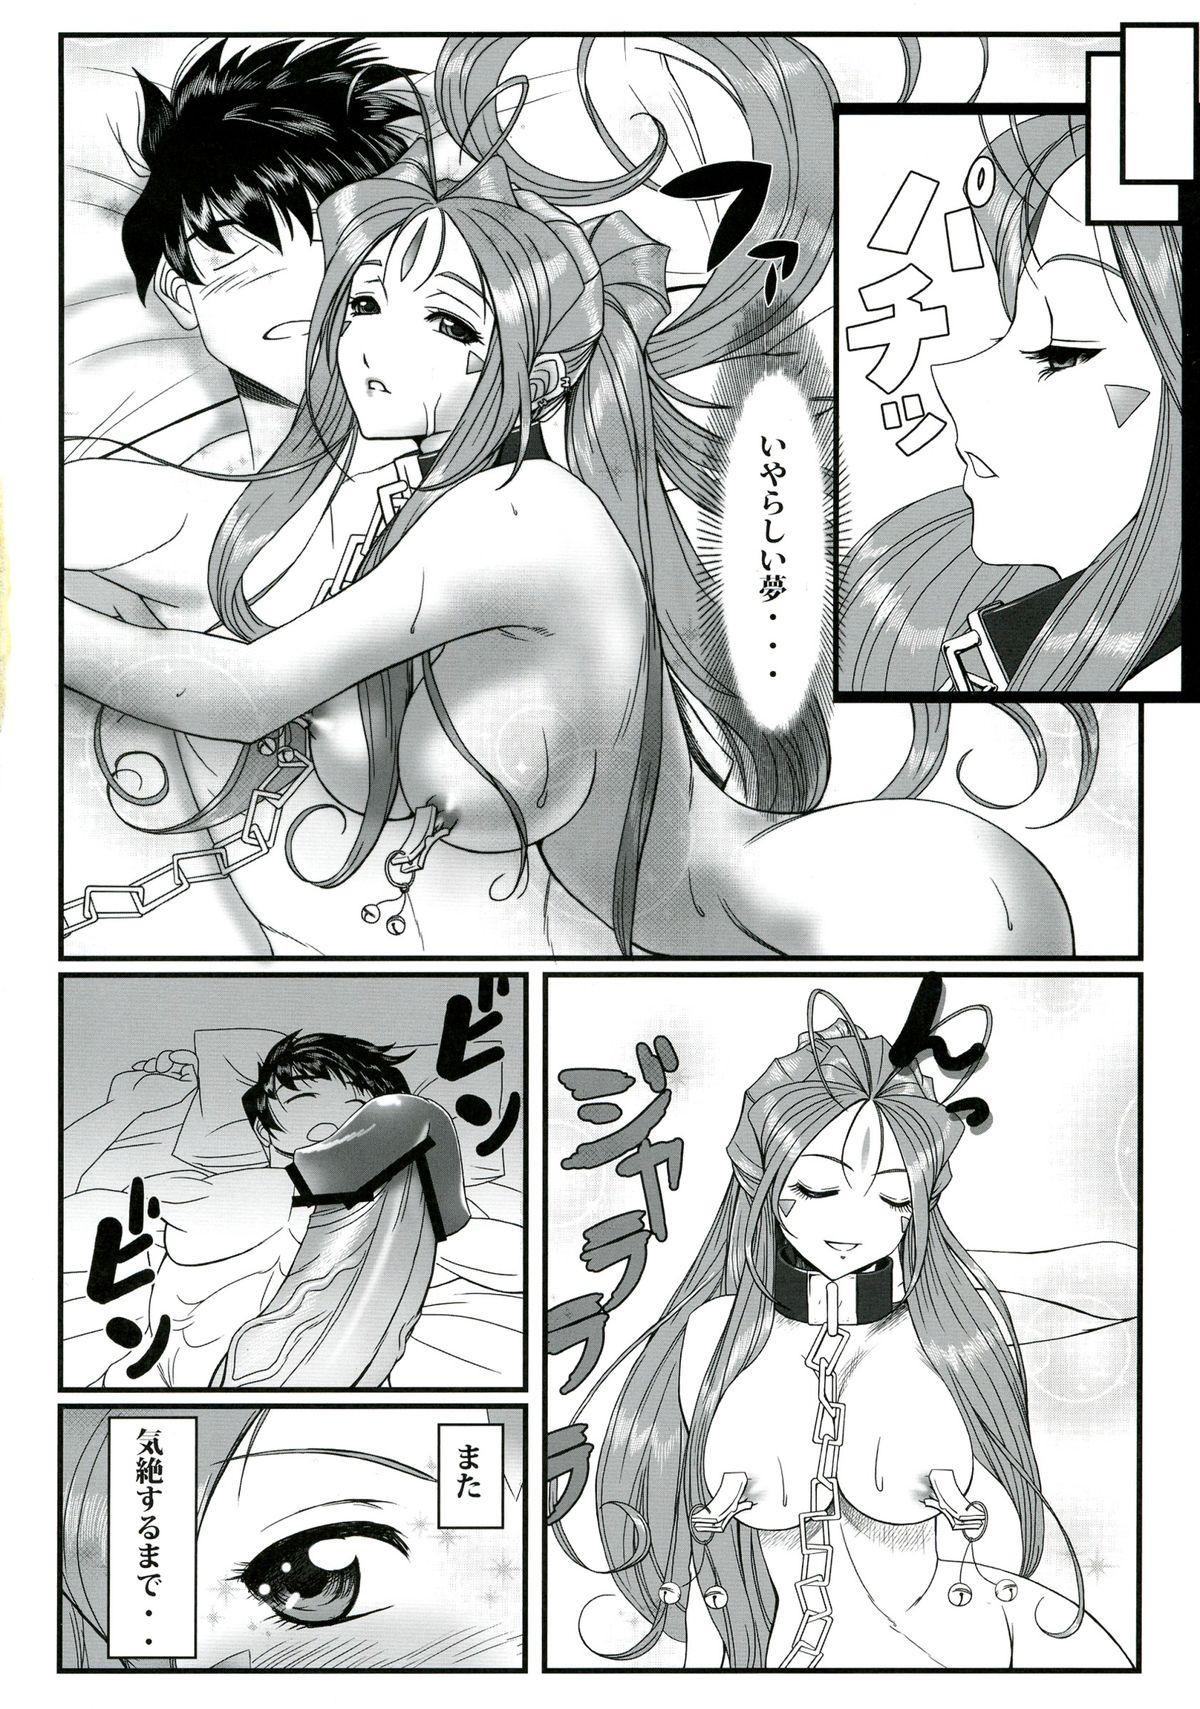 Matures Gangu Megami Ichi - Ah my goddess Bisex - Page 4